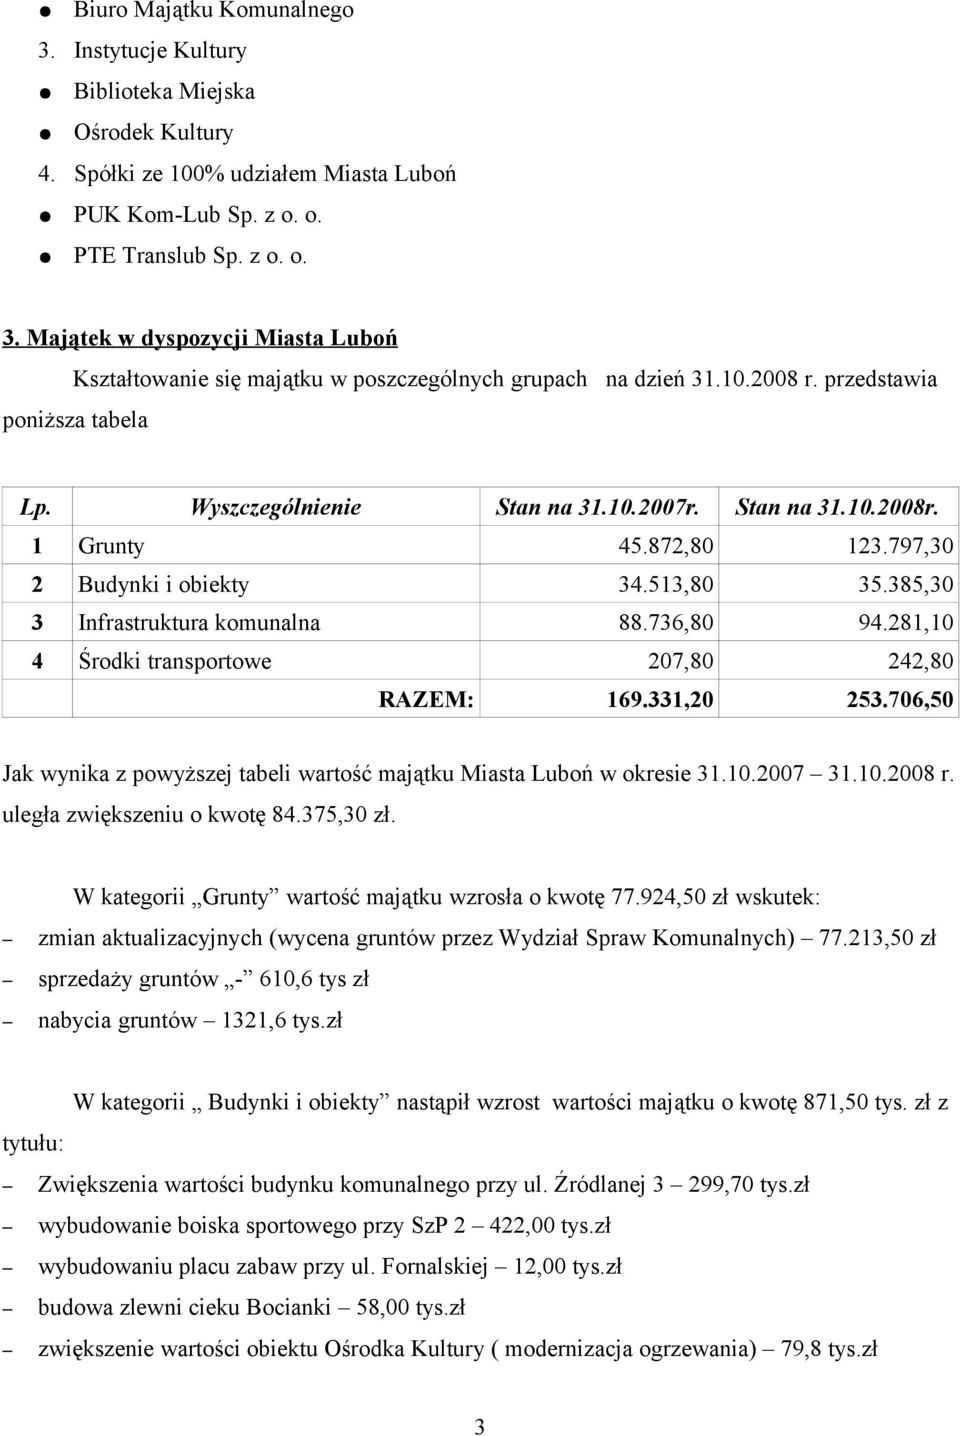 736,80 94.28,0 4 Środki transportowe 207,80 242,80 RAZEM: 69.33,20 253.706,50 Jak wynika z powyższej tabeli wartość majątku Miasta Luboń w okresie 3.0.2007 3.0.2008 r. uległa zwiększeniu o kwotę 84.